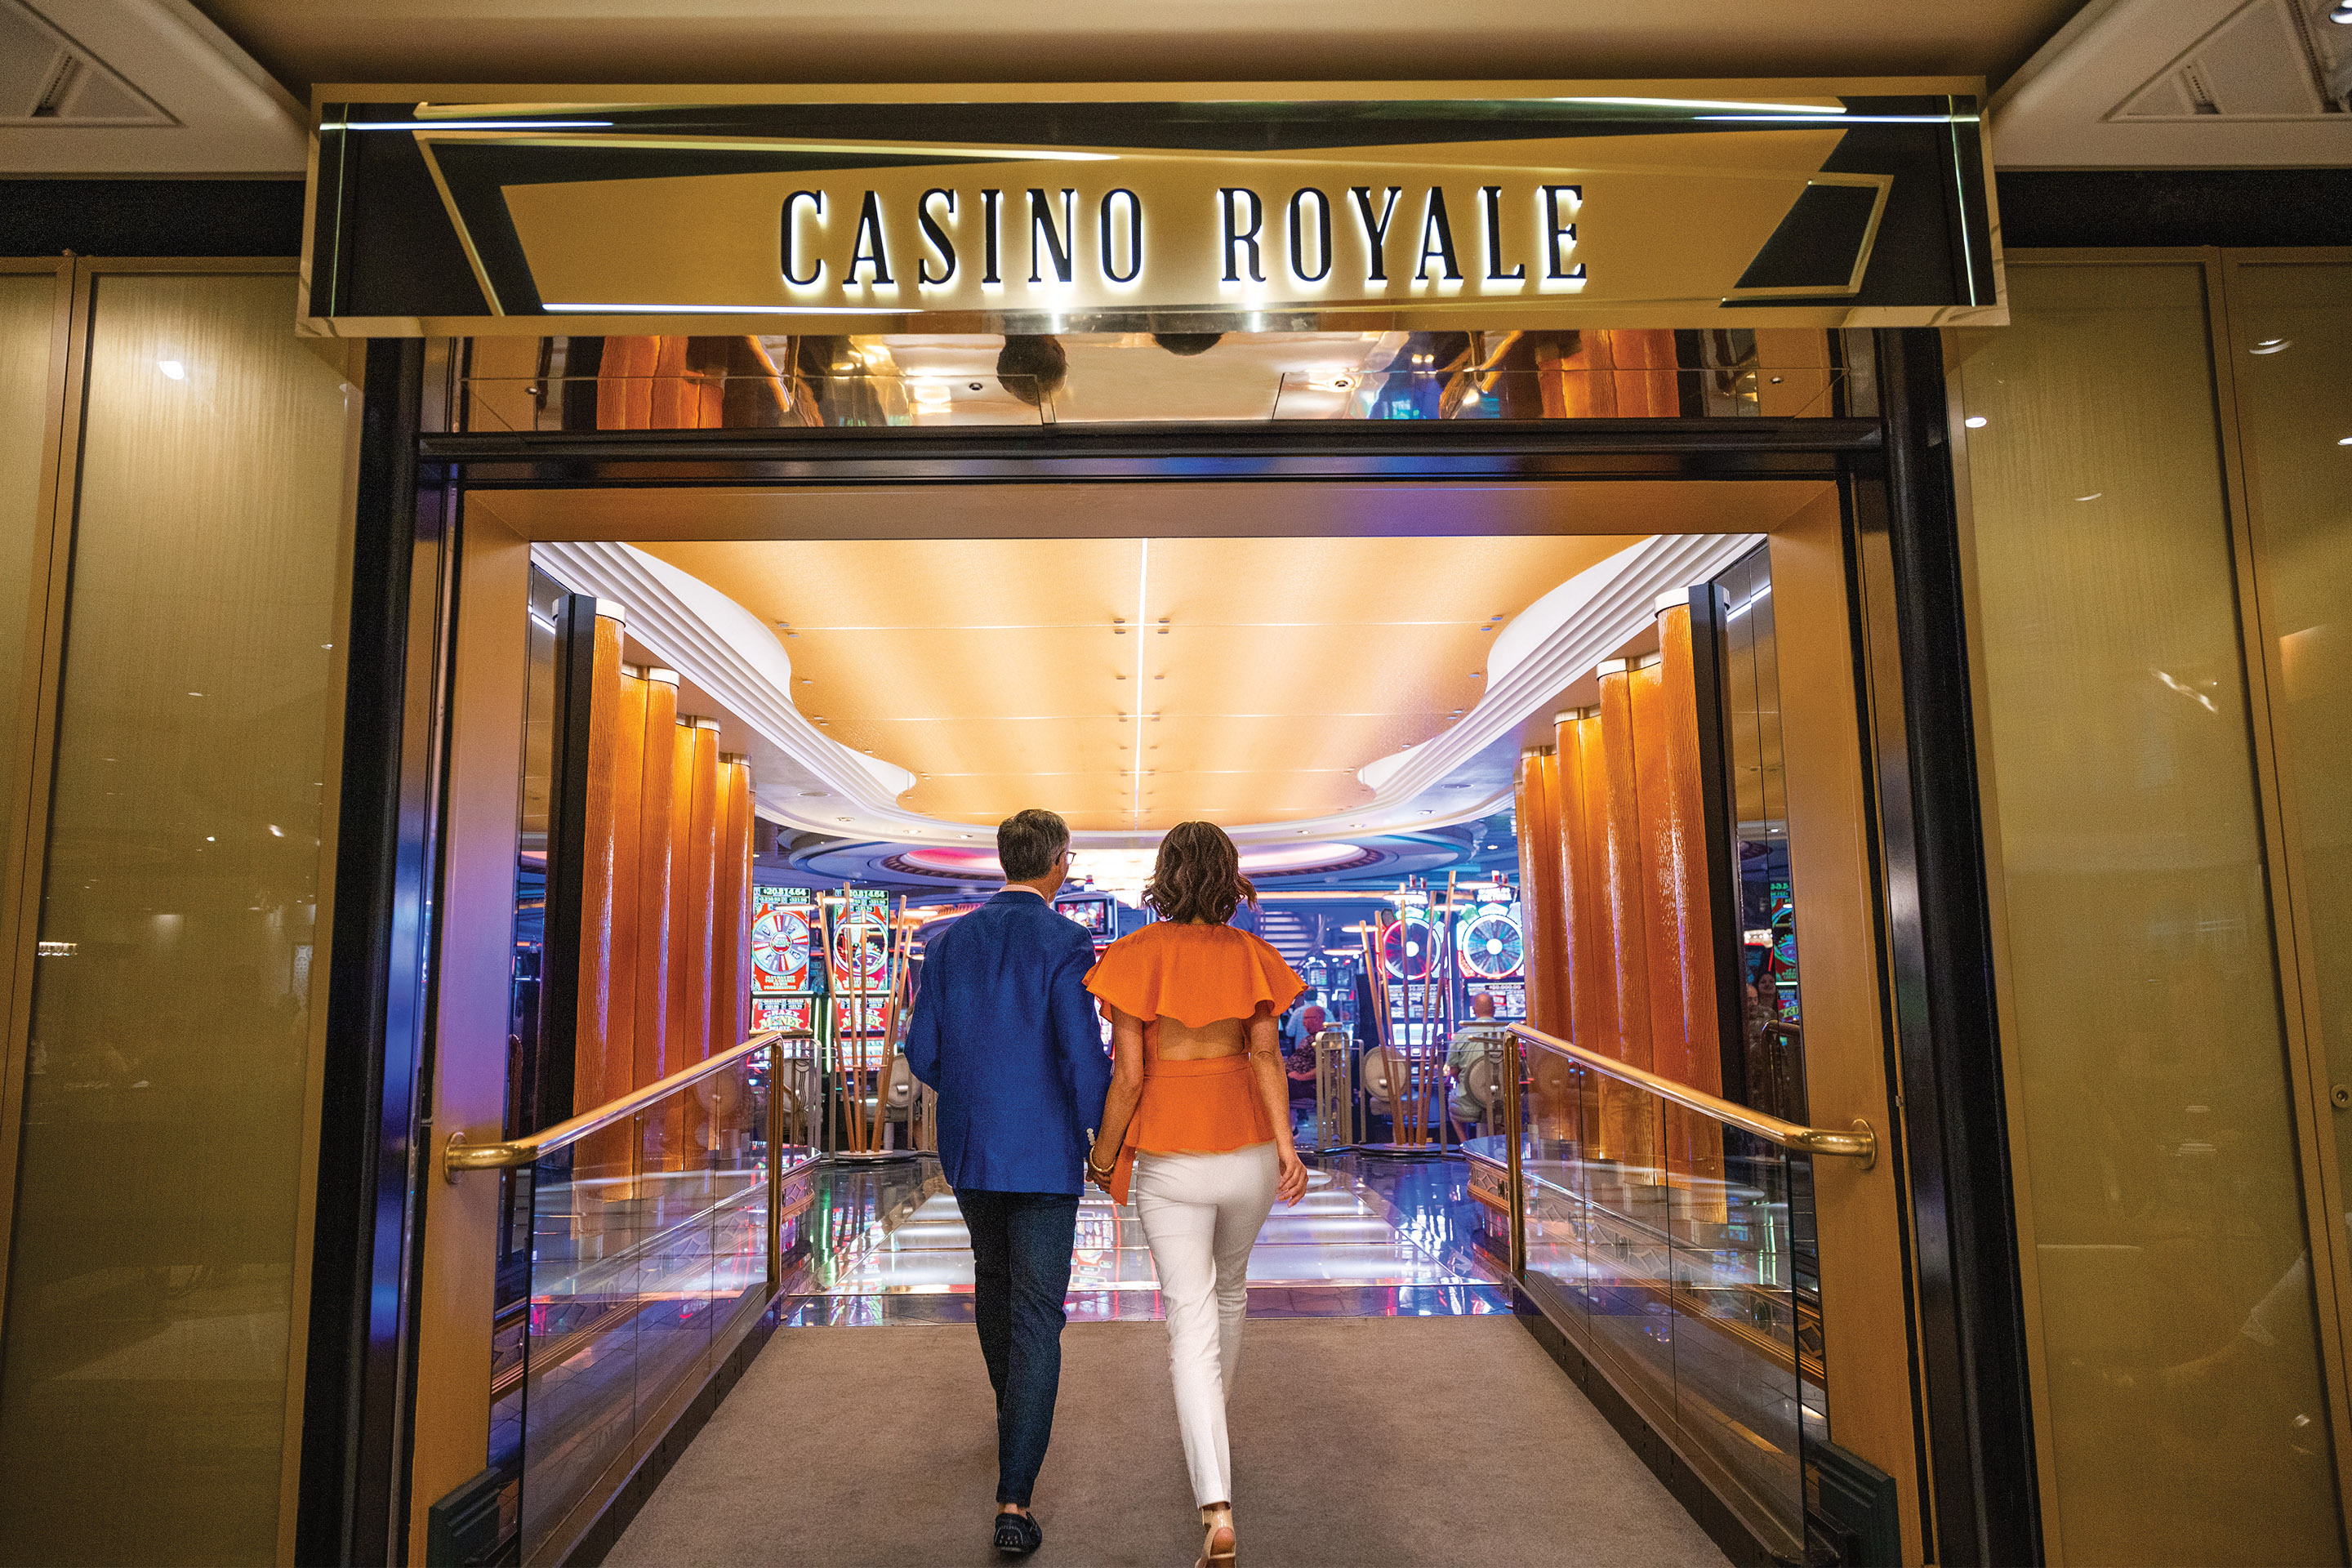 Casino Cruise, Casino & Amazing Games